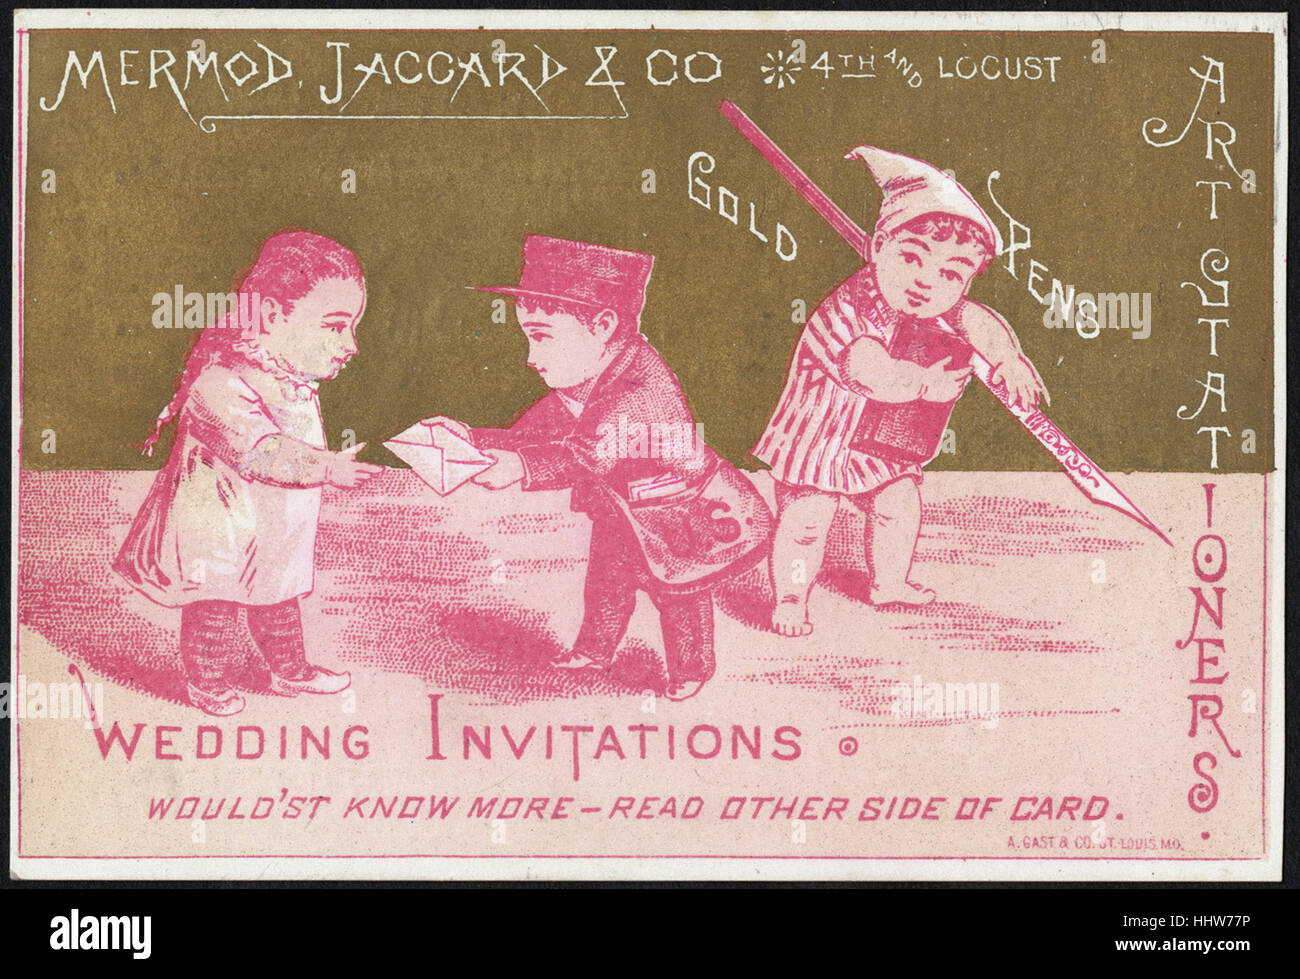 Mermod, Jaccard & Co. La quarta e la locusta oro penne. Matrimonio inviti. (Anteriore) - Arredamenti per la casa Scambio di carte Foto Stock